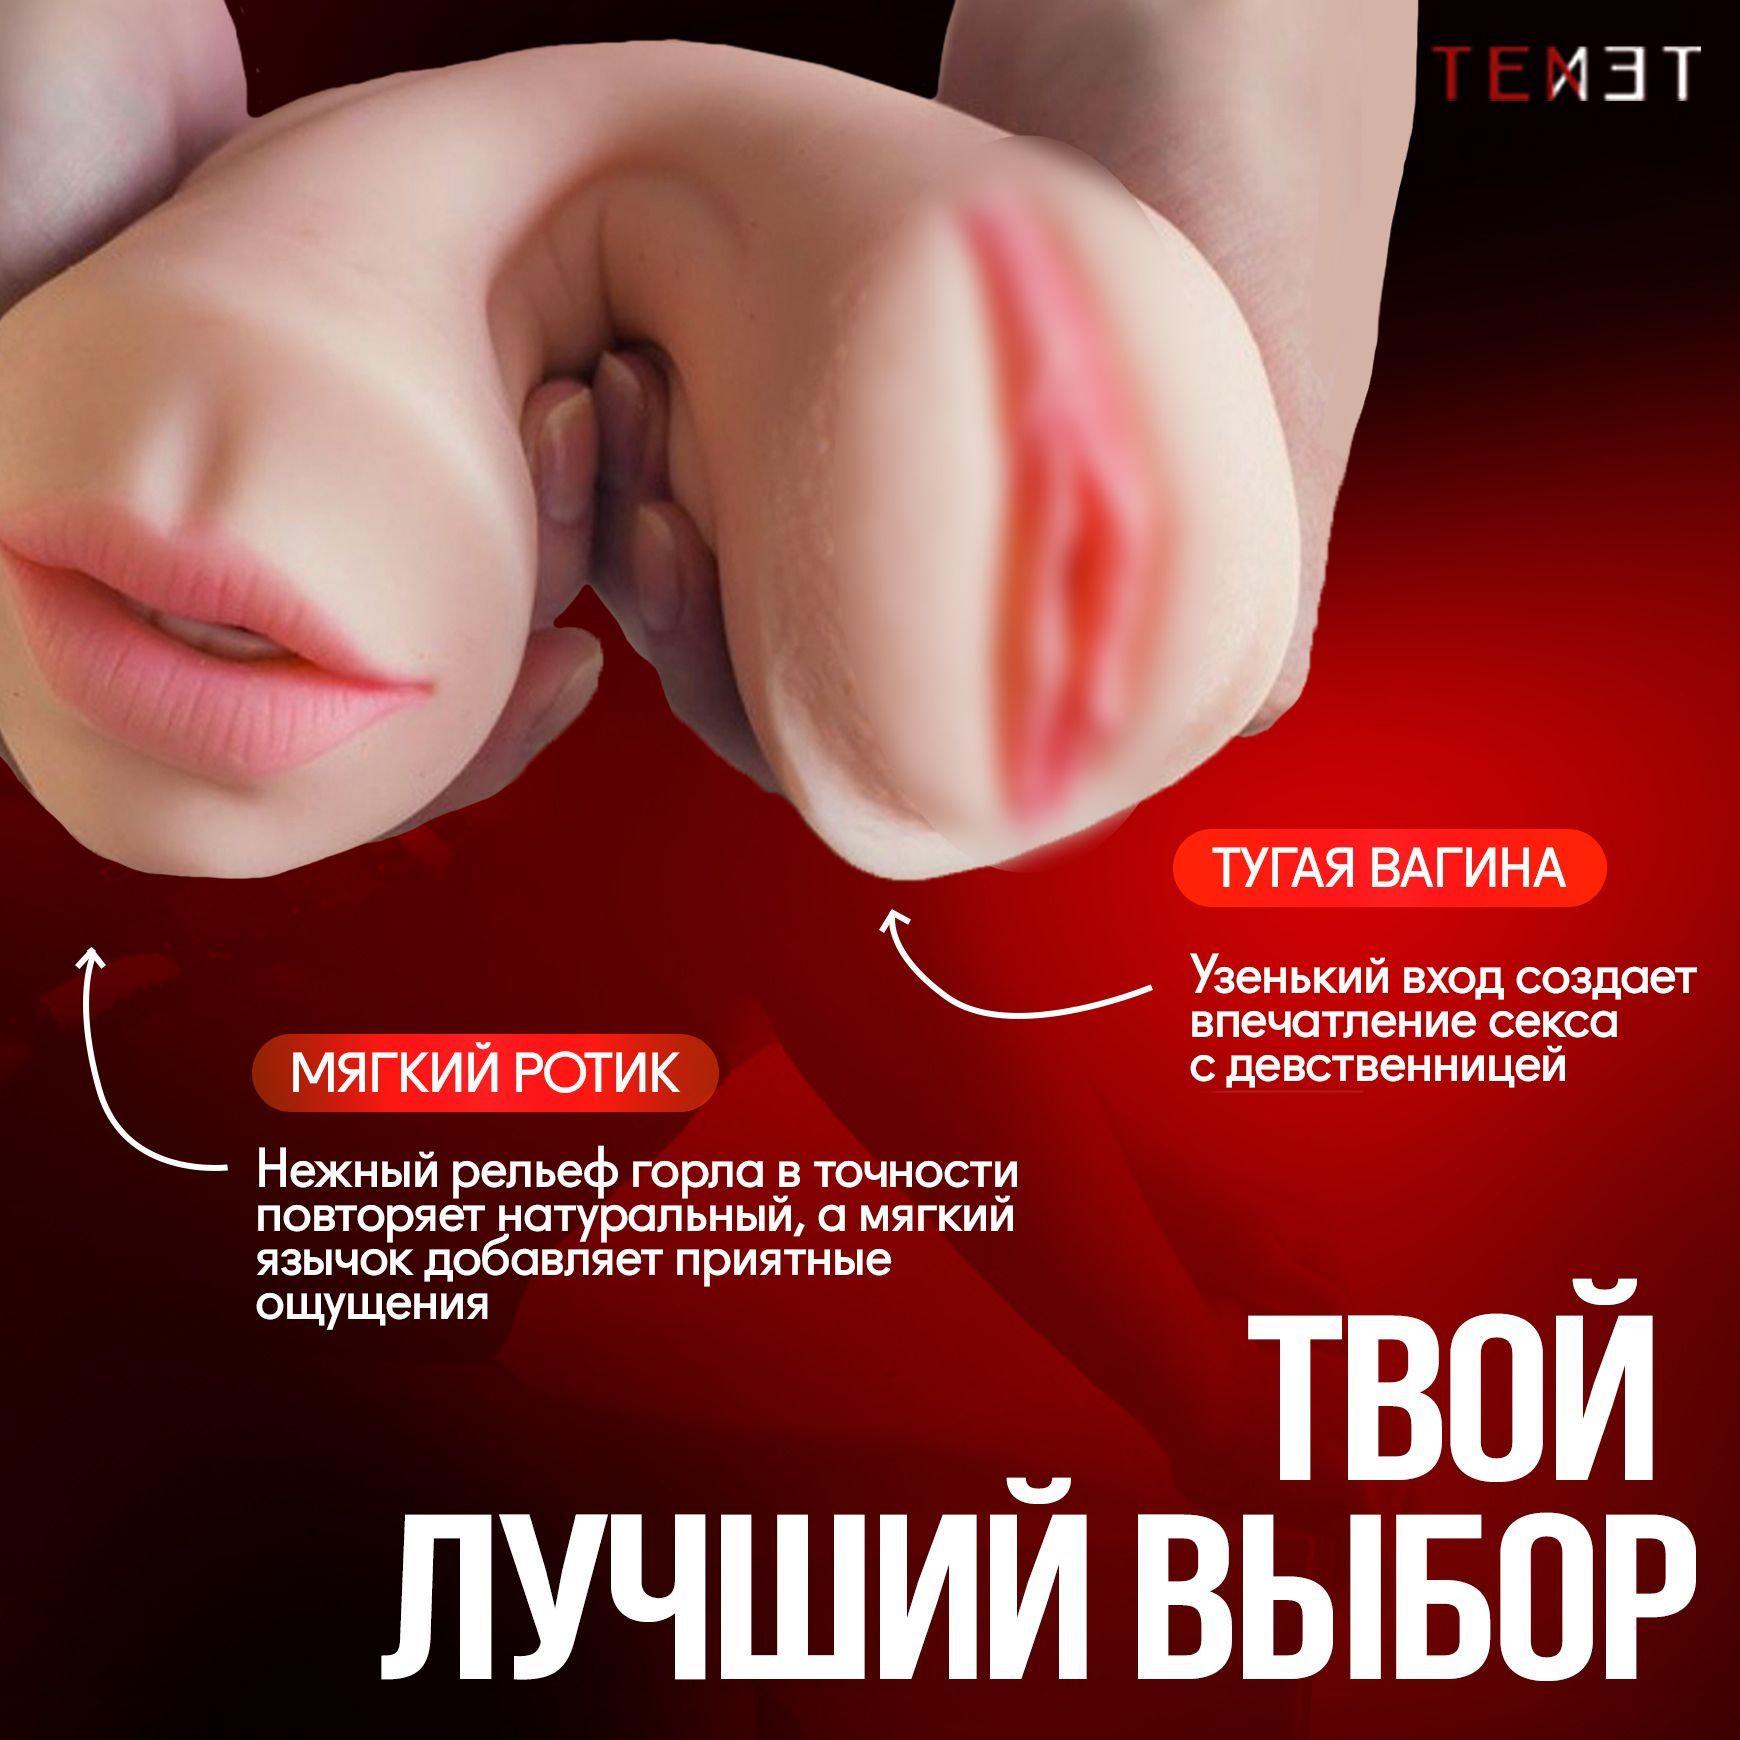 Голая узенькая пизда - фото секс и порно grantafl.ru